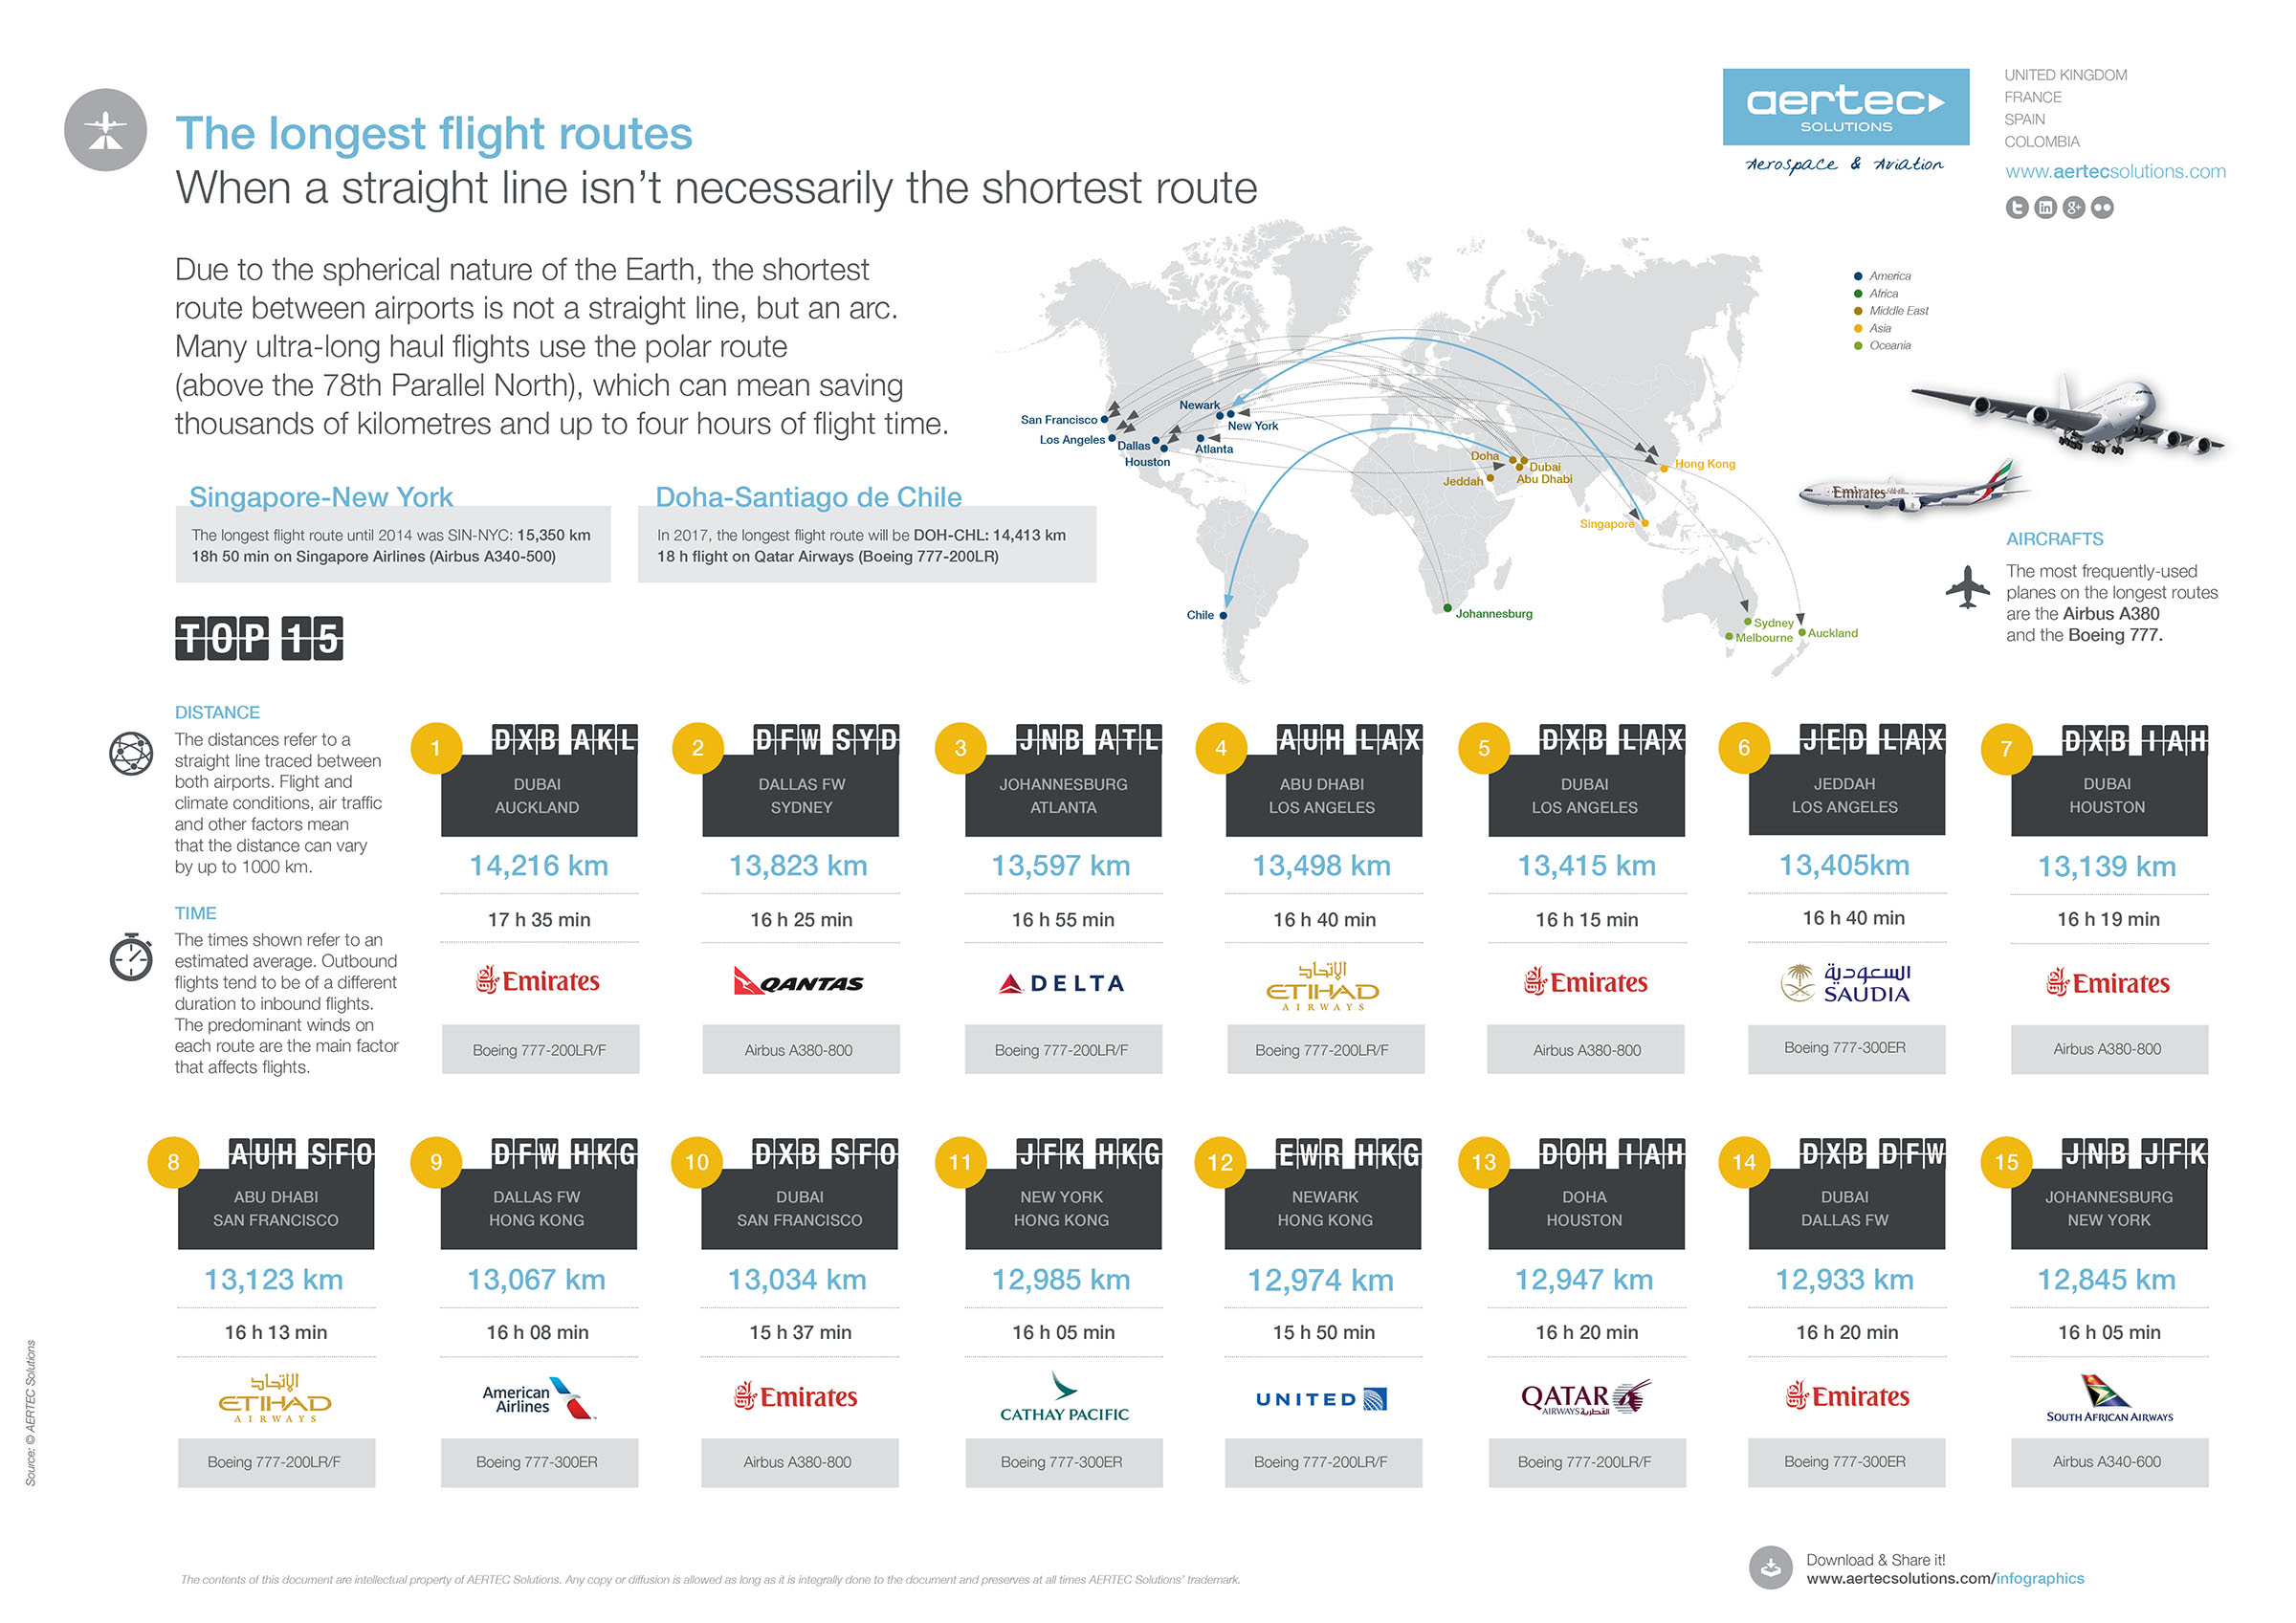 The longest flight routes